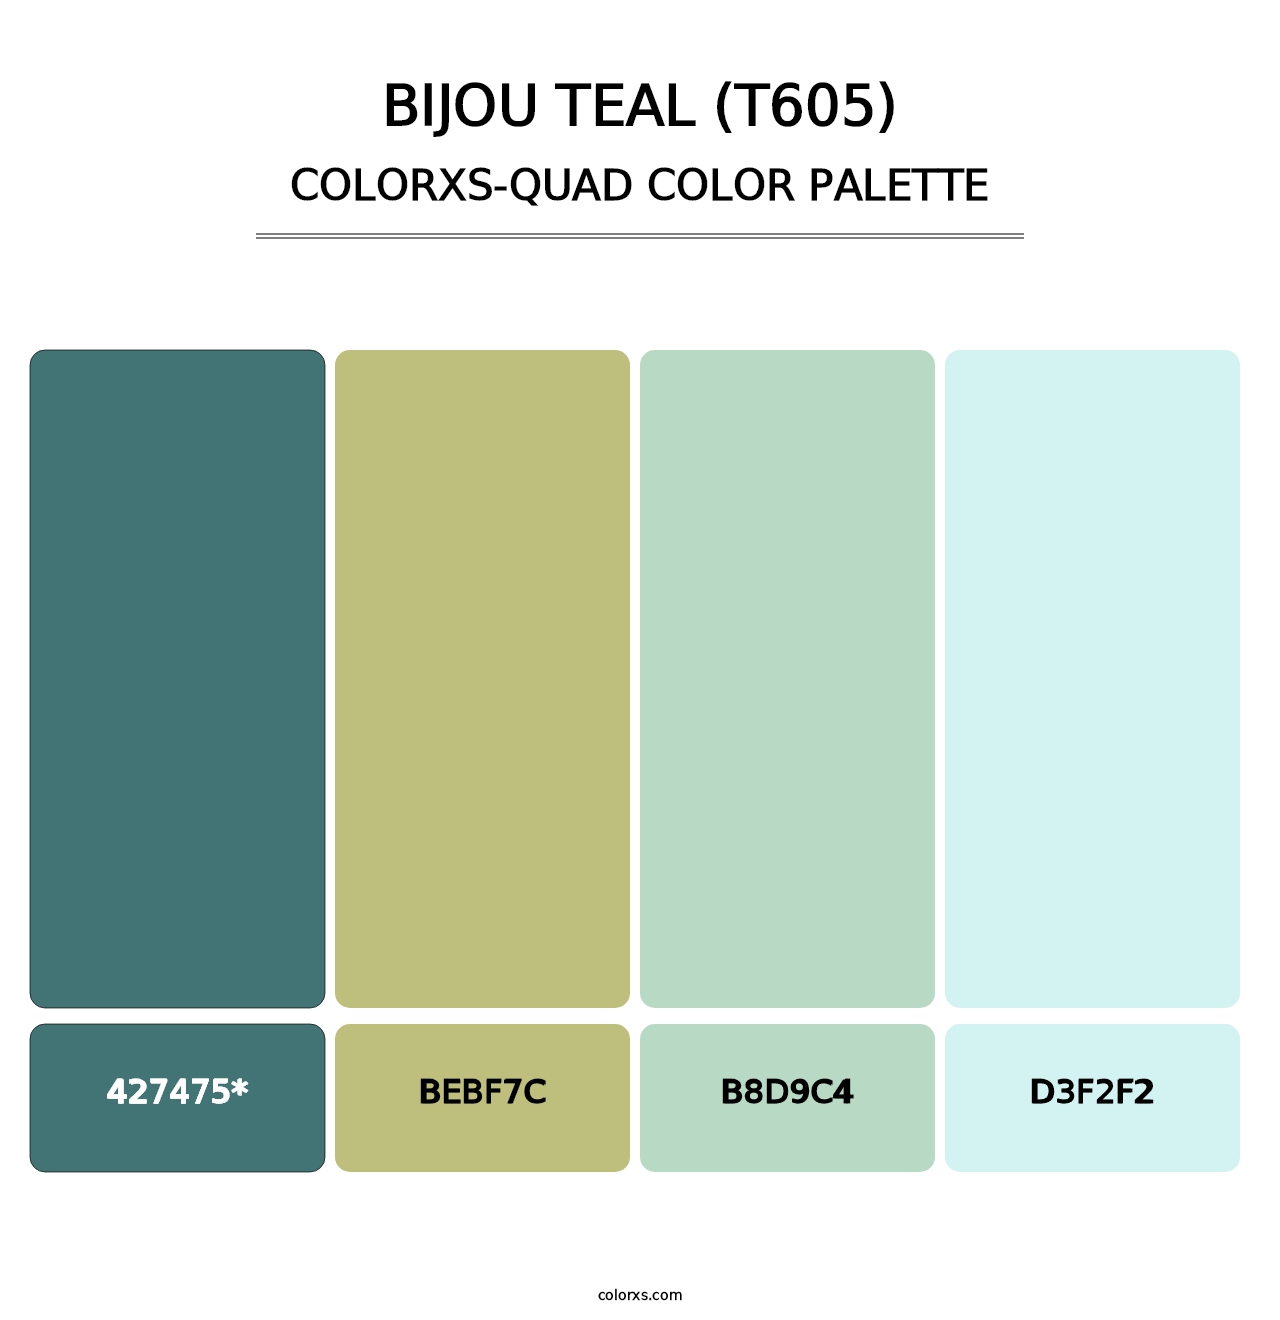 Bijou Teal (T605) - Colorxs Quad Palette